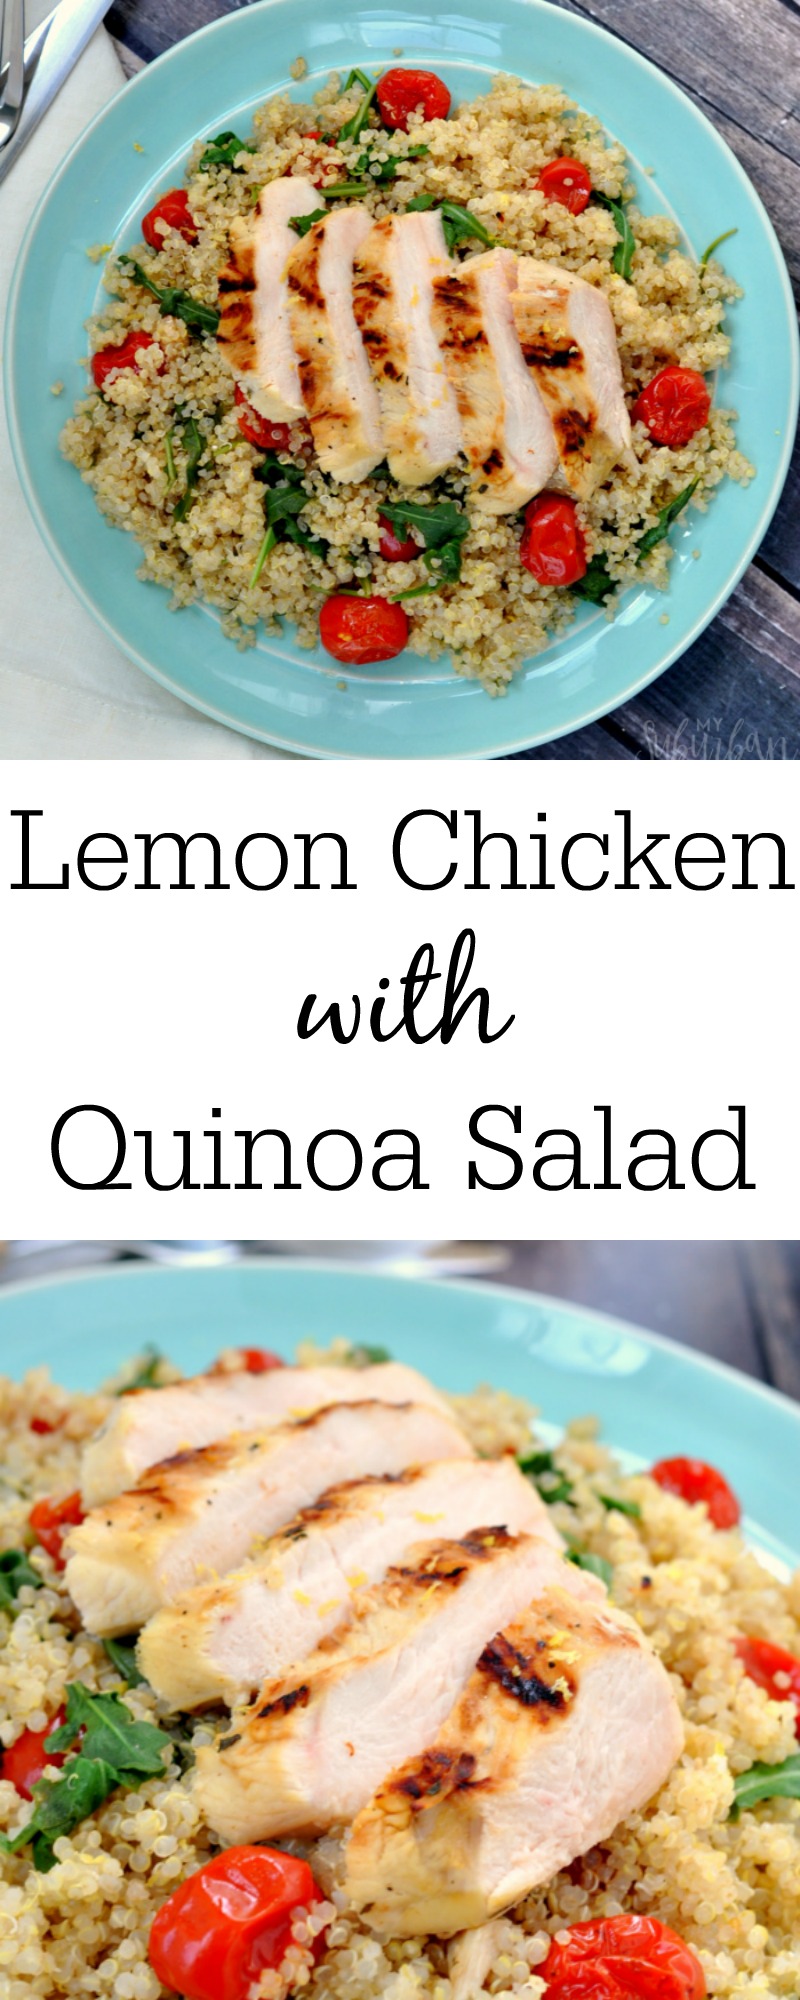 Citrus Chicken with Quinoa Salad